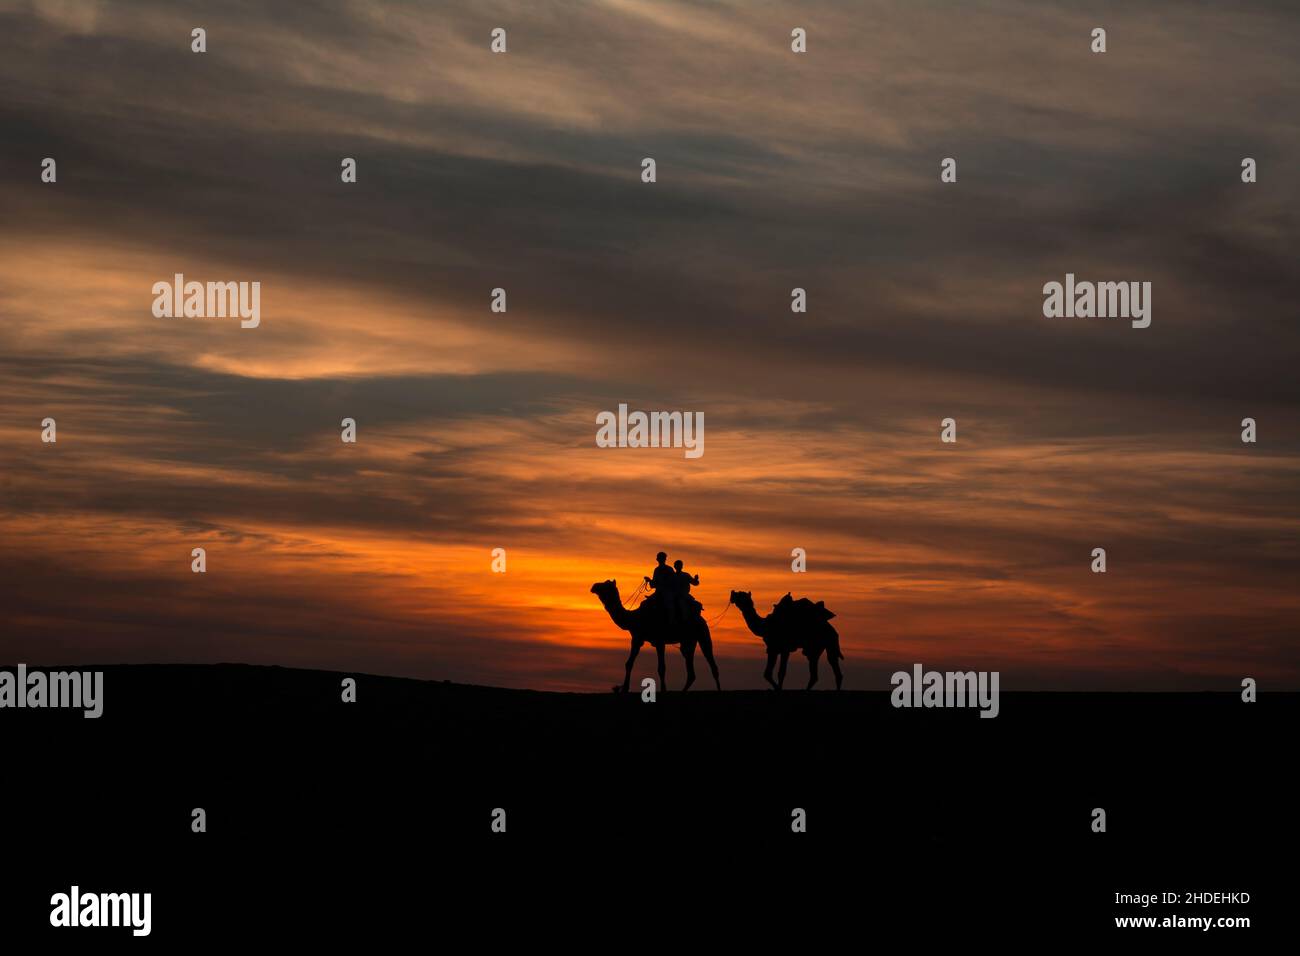 Camellos caminando sobre dunas de arena contra cielos espectaculares en las dunas de arena de Sam Foto de stock